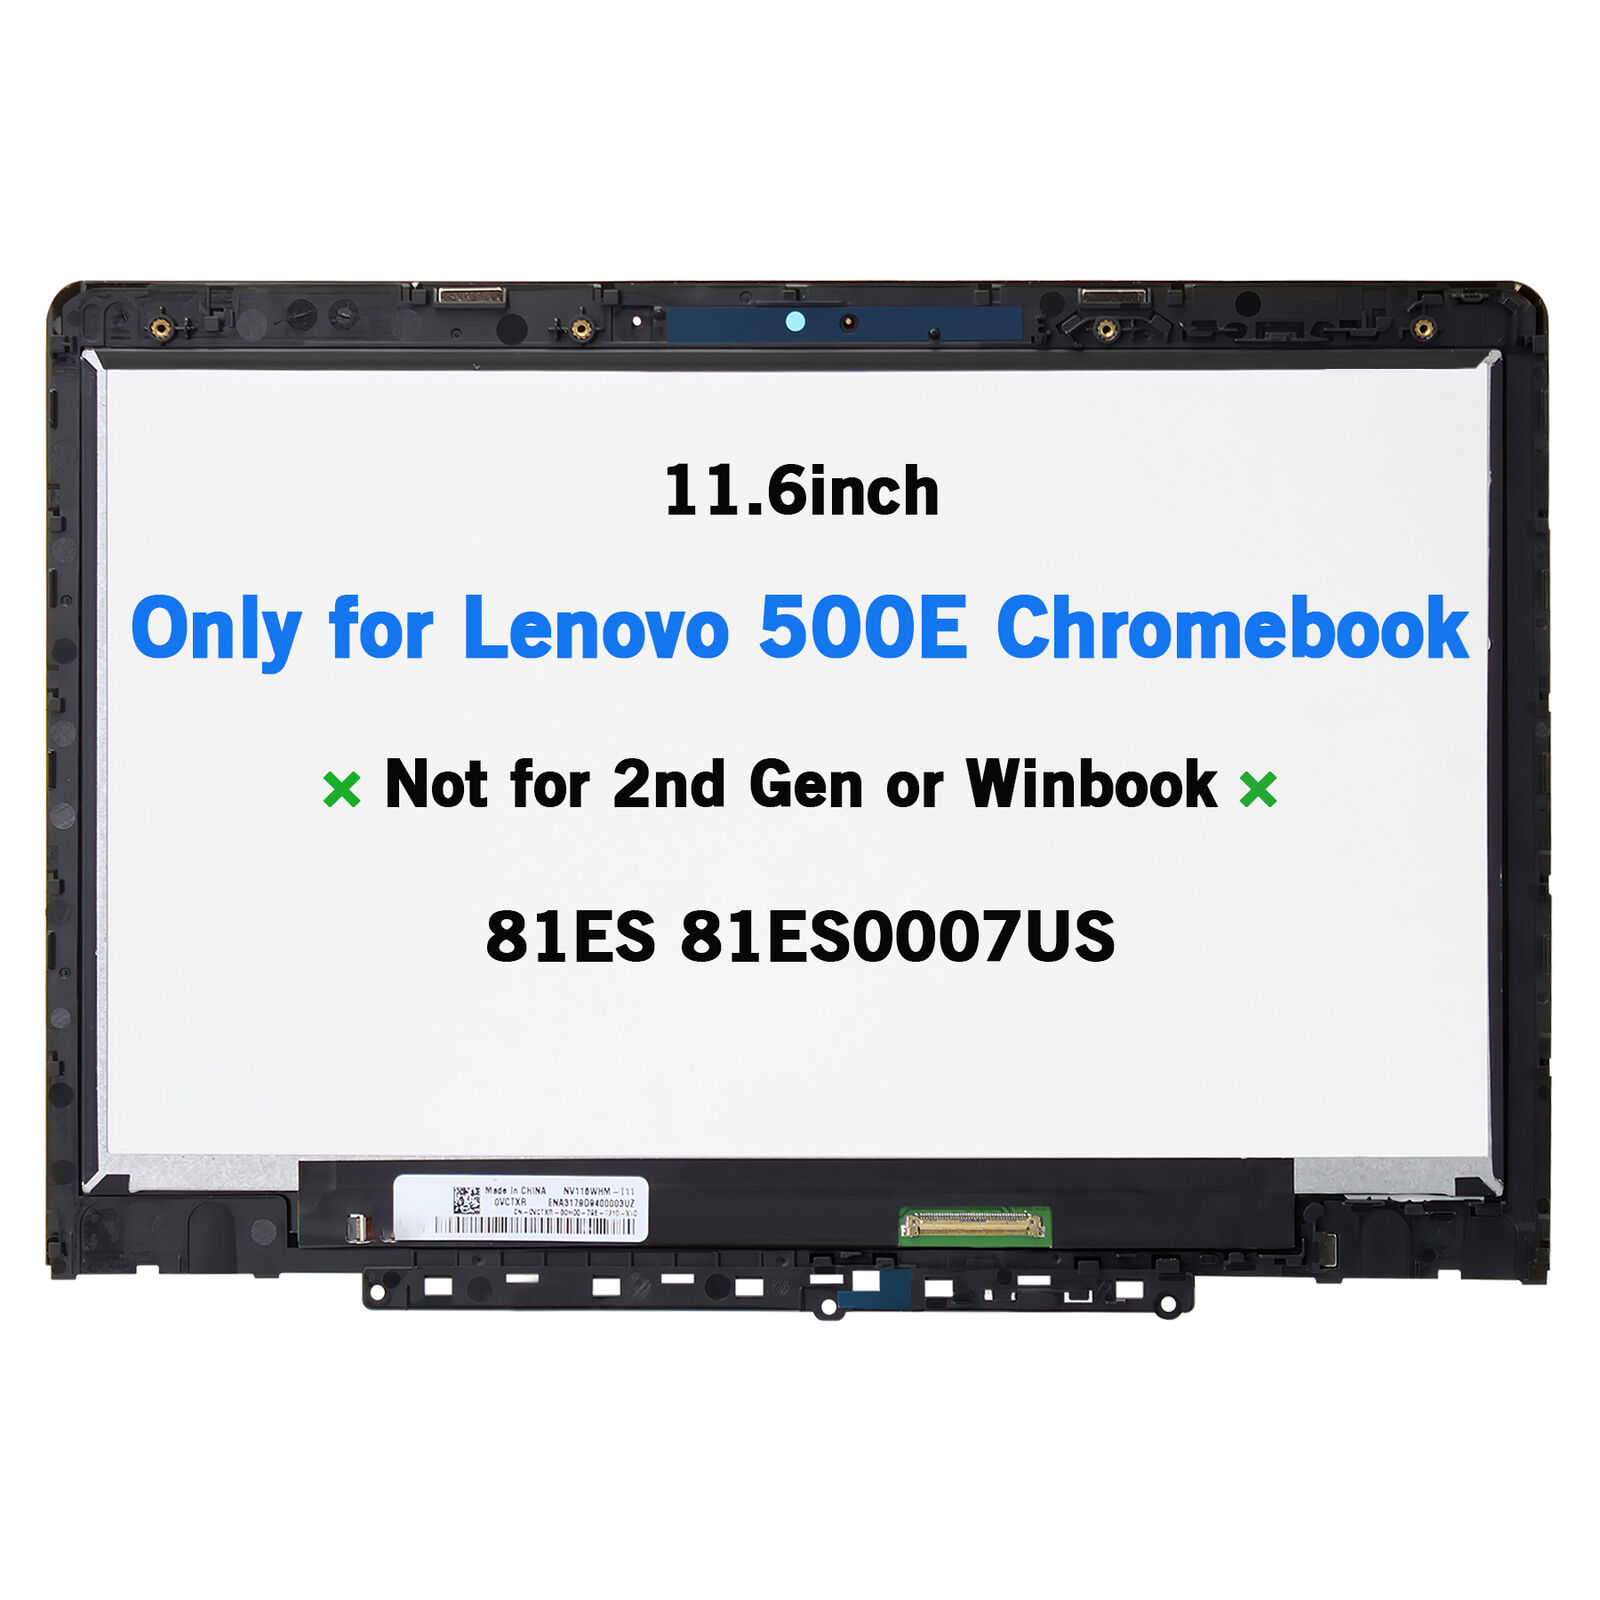 Lenovo 500E 1st Gen OEM Chromebook 81ES LCD Touch & Bezel 11.6inch 5D10Q79736